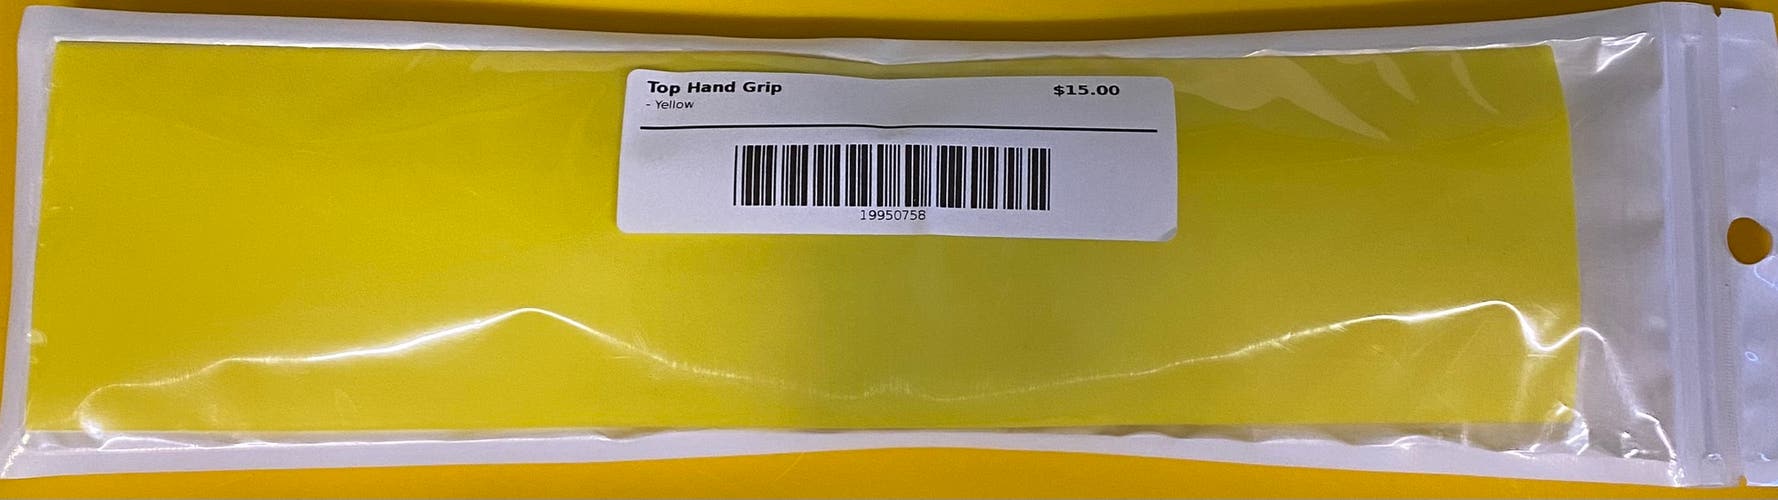 Top Hand Grip